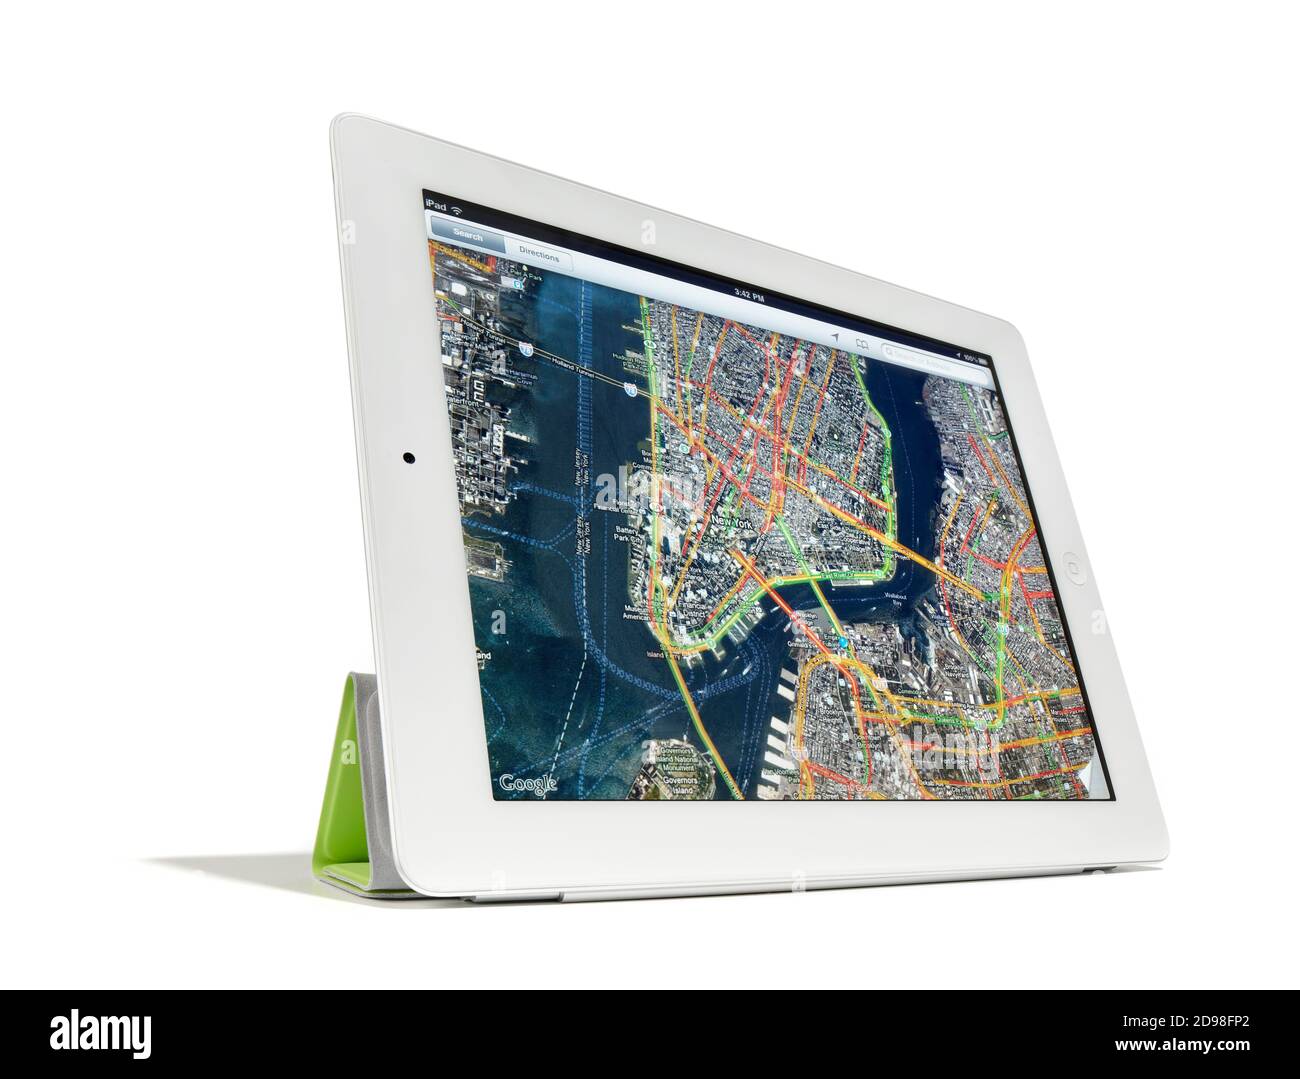 Apple iPad2 Standing up zeigt Google-Kartenansicht von Manhattan und Brooklyn auf weißem Hintergrund fotografiert. Stockfoto